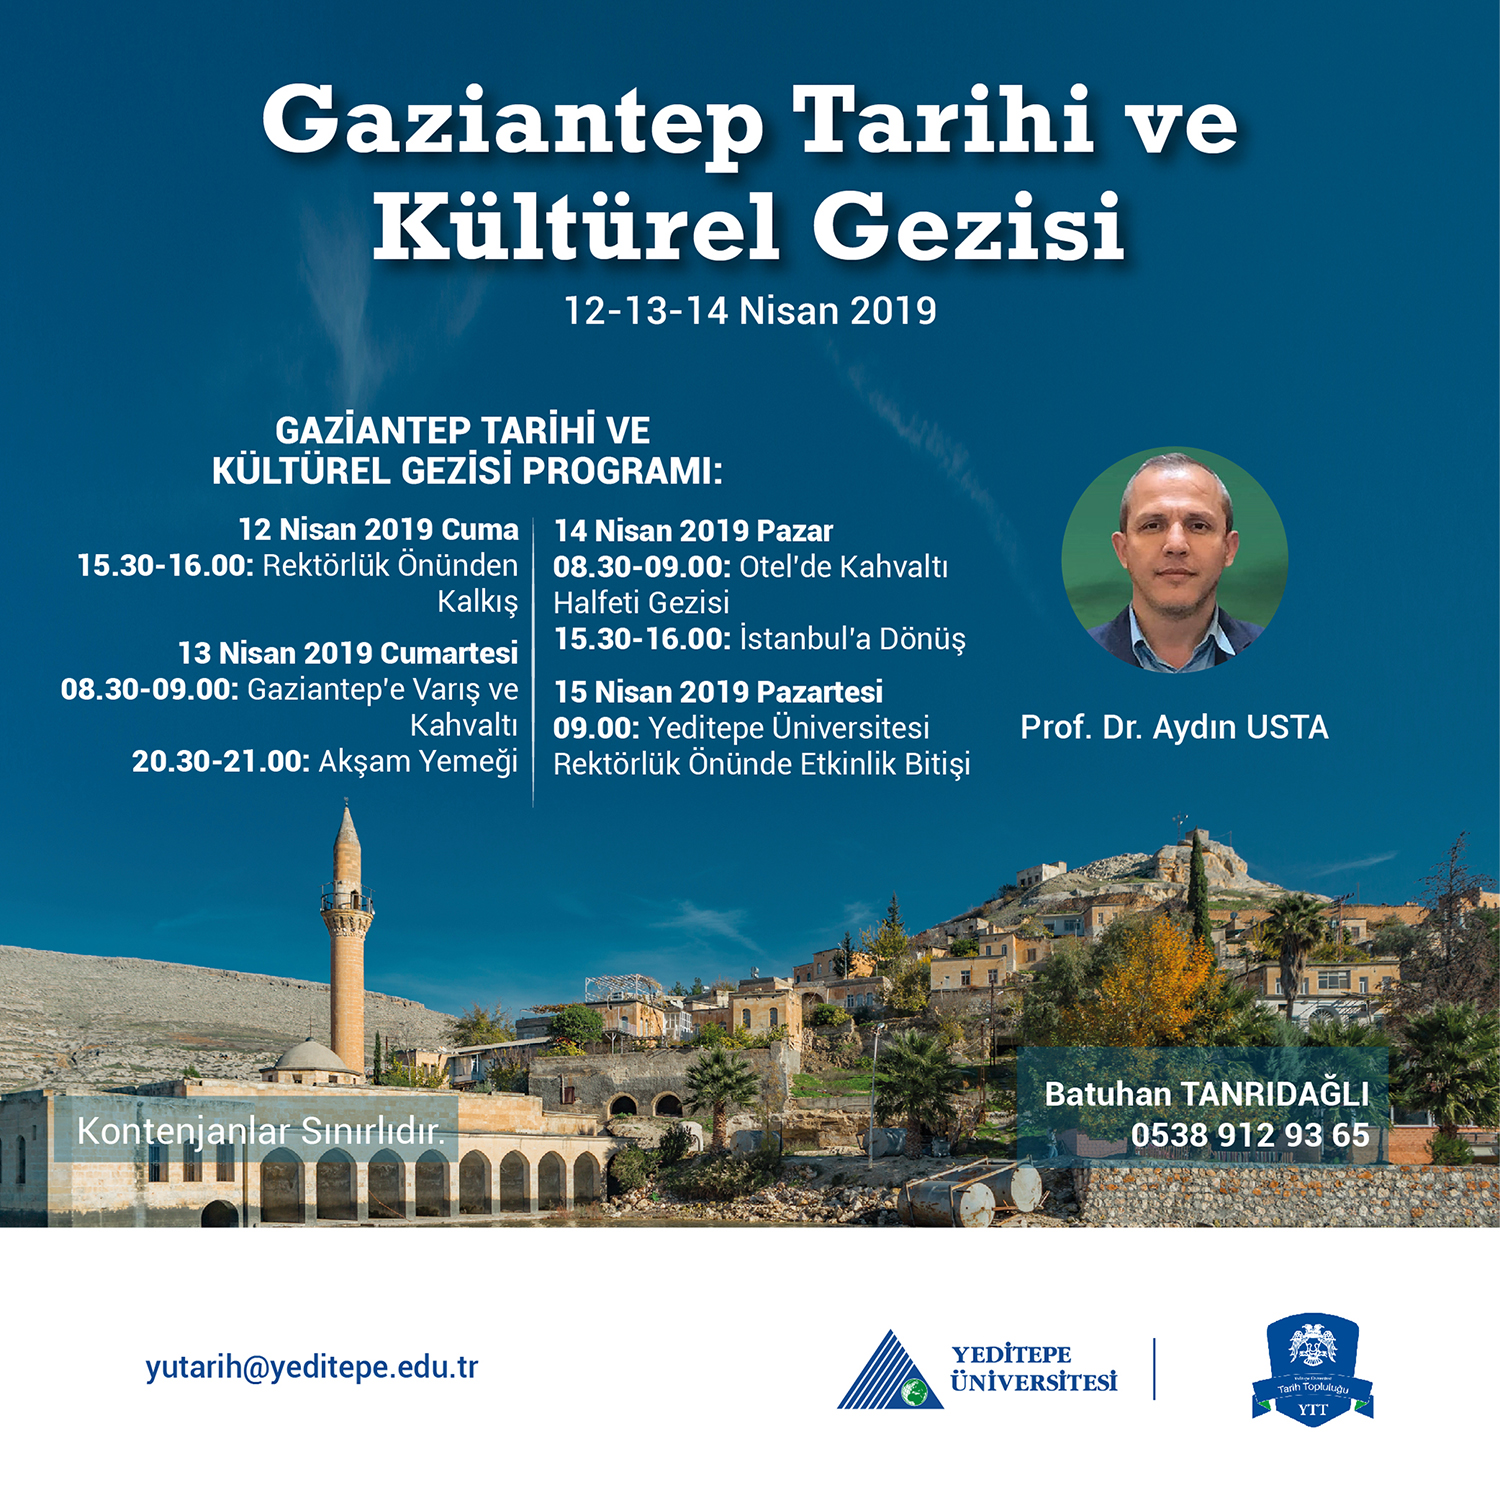 Gaziantep Tarihi ve Kültürel Gezisi